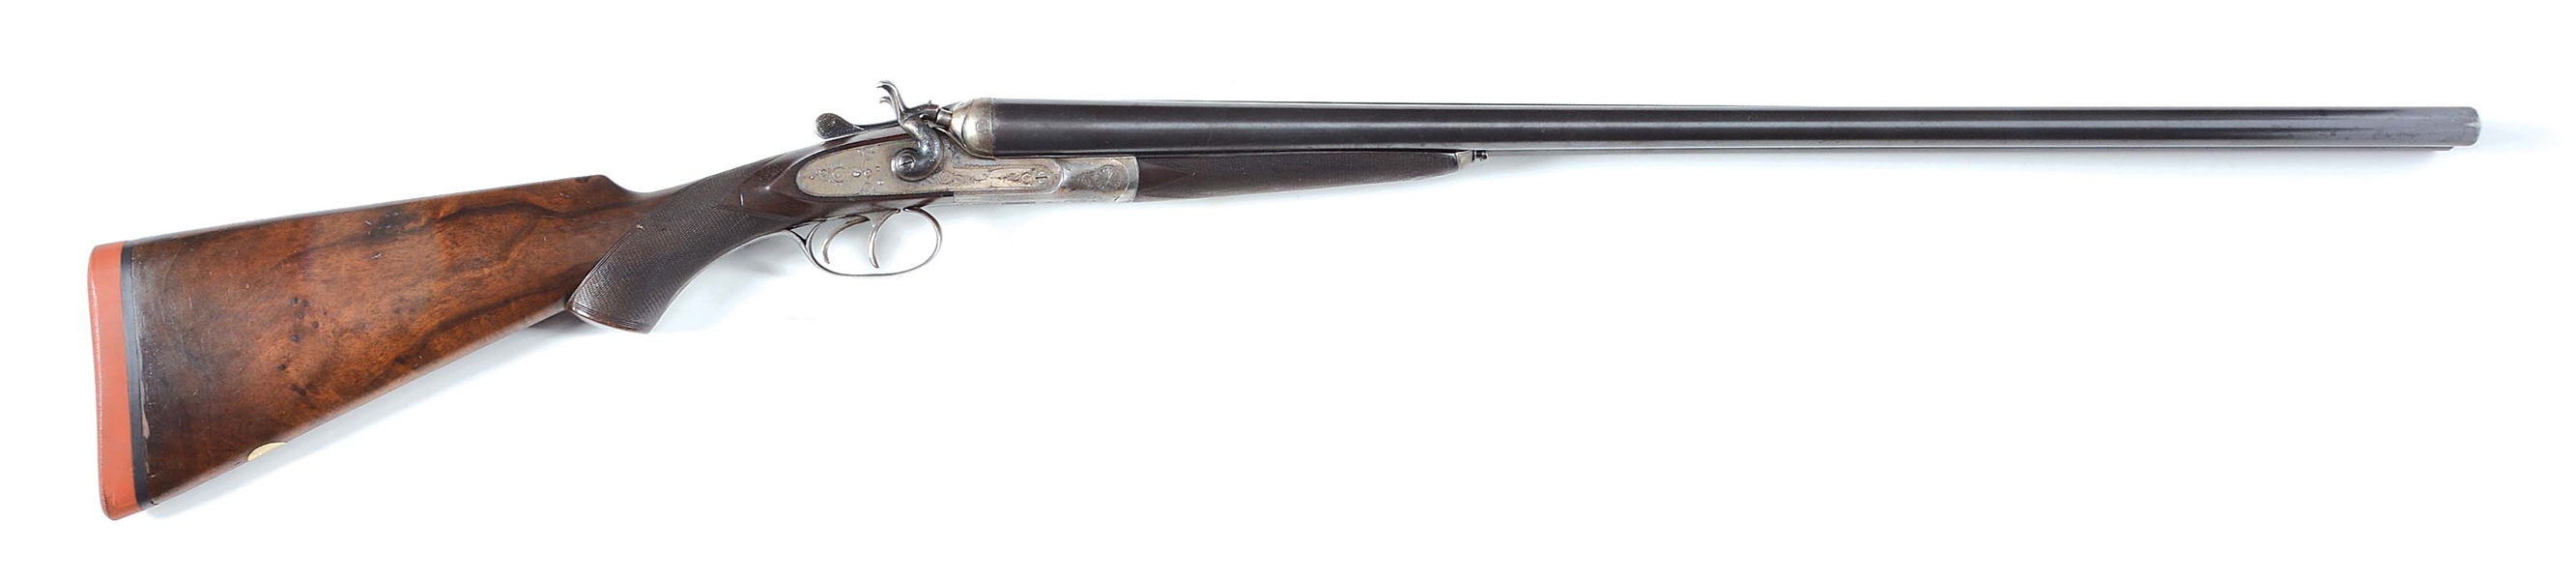 (C) CASED & ENGRAVED AUGUSTE FRANCOTTE "NEMROD GUN" 12 BORE DOUBLE HAMMER GUN.